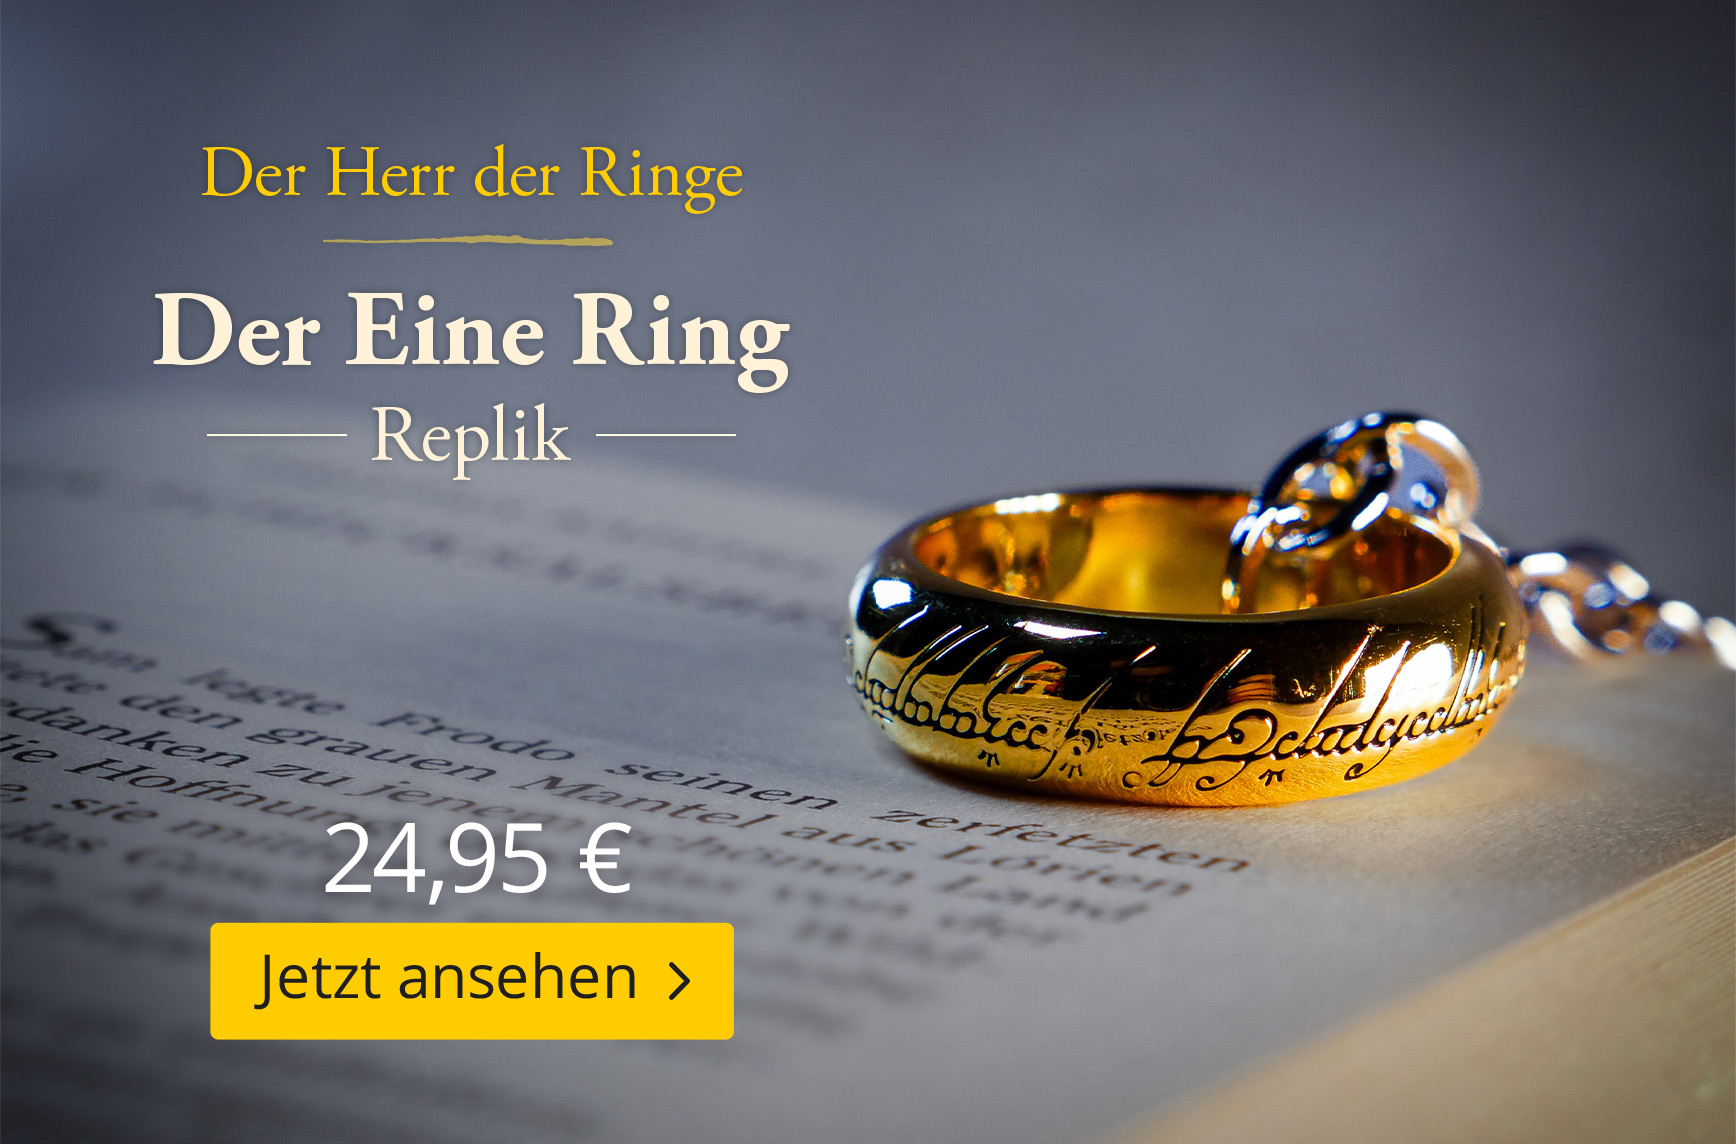 Herr der Ringe - Der Eine Ring Replik - 24,95 EUR